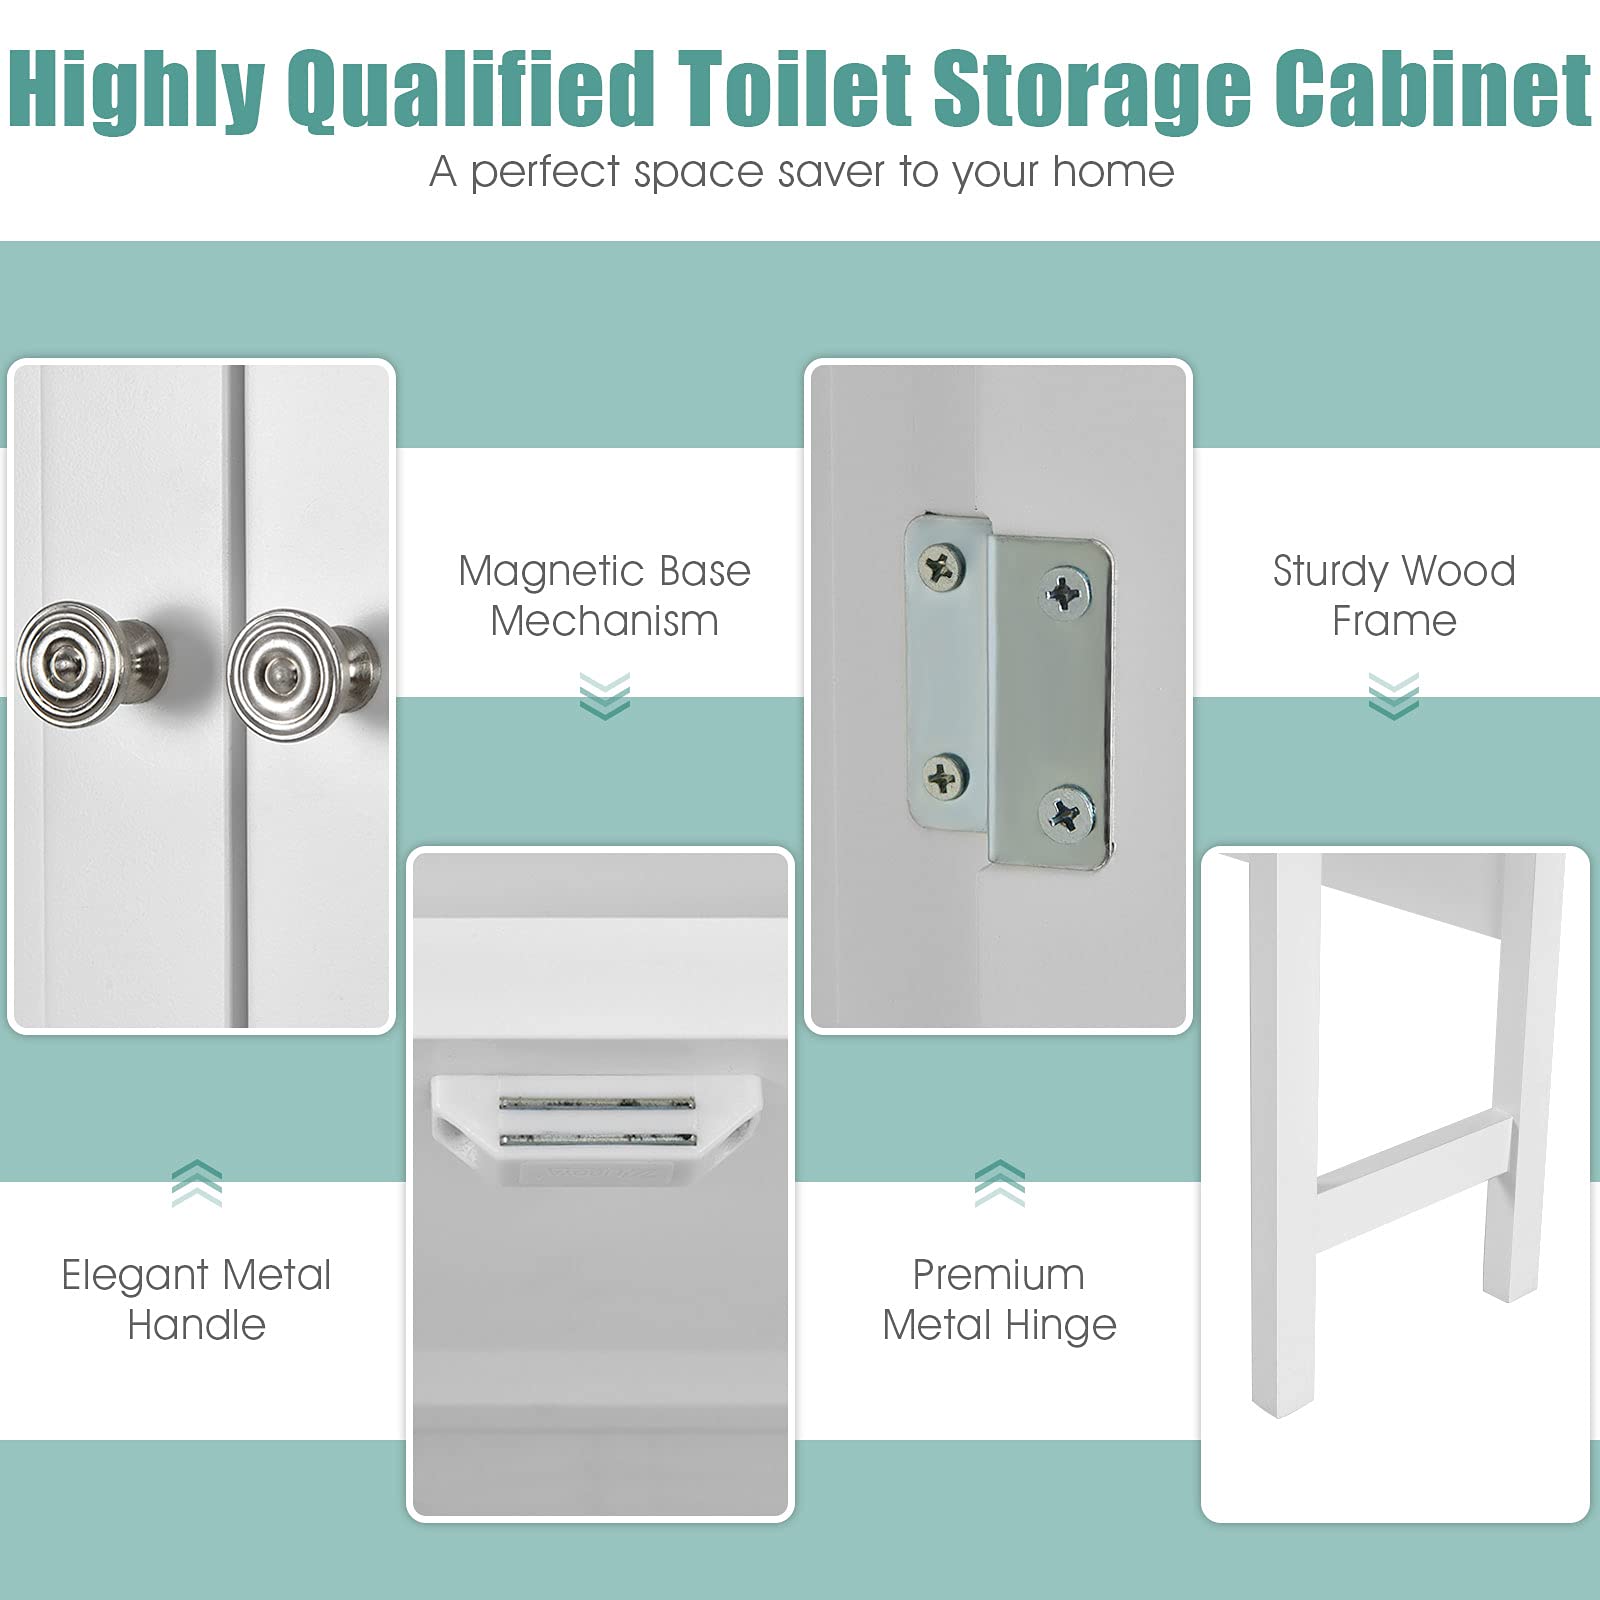 Giantex Over The Toilet Storage Cabinet W/ 2-Door Cabinet, Open Shelf, 3-Positon Adjustable Shelf